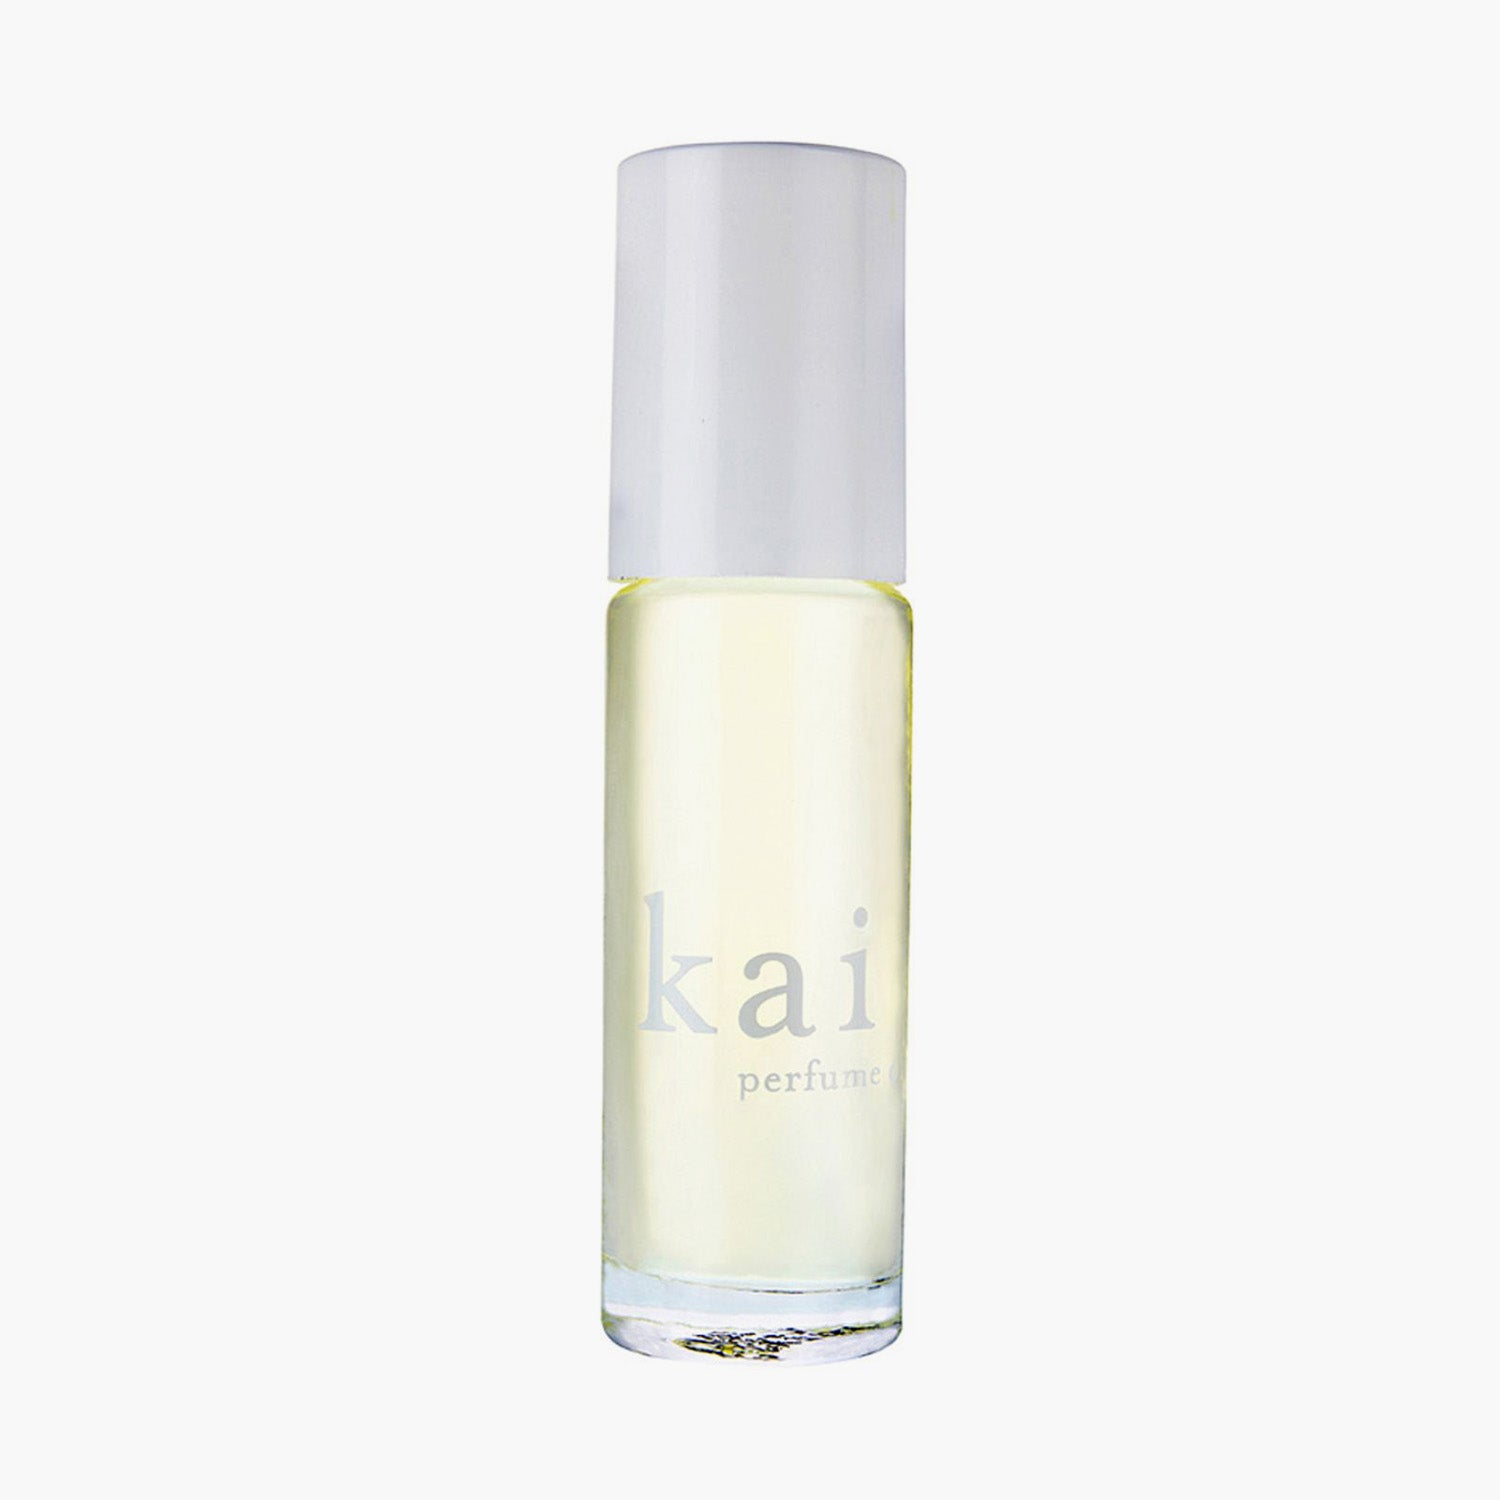 KAI Perfume Oil